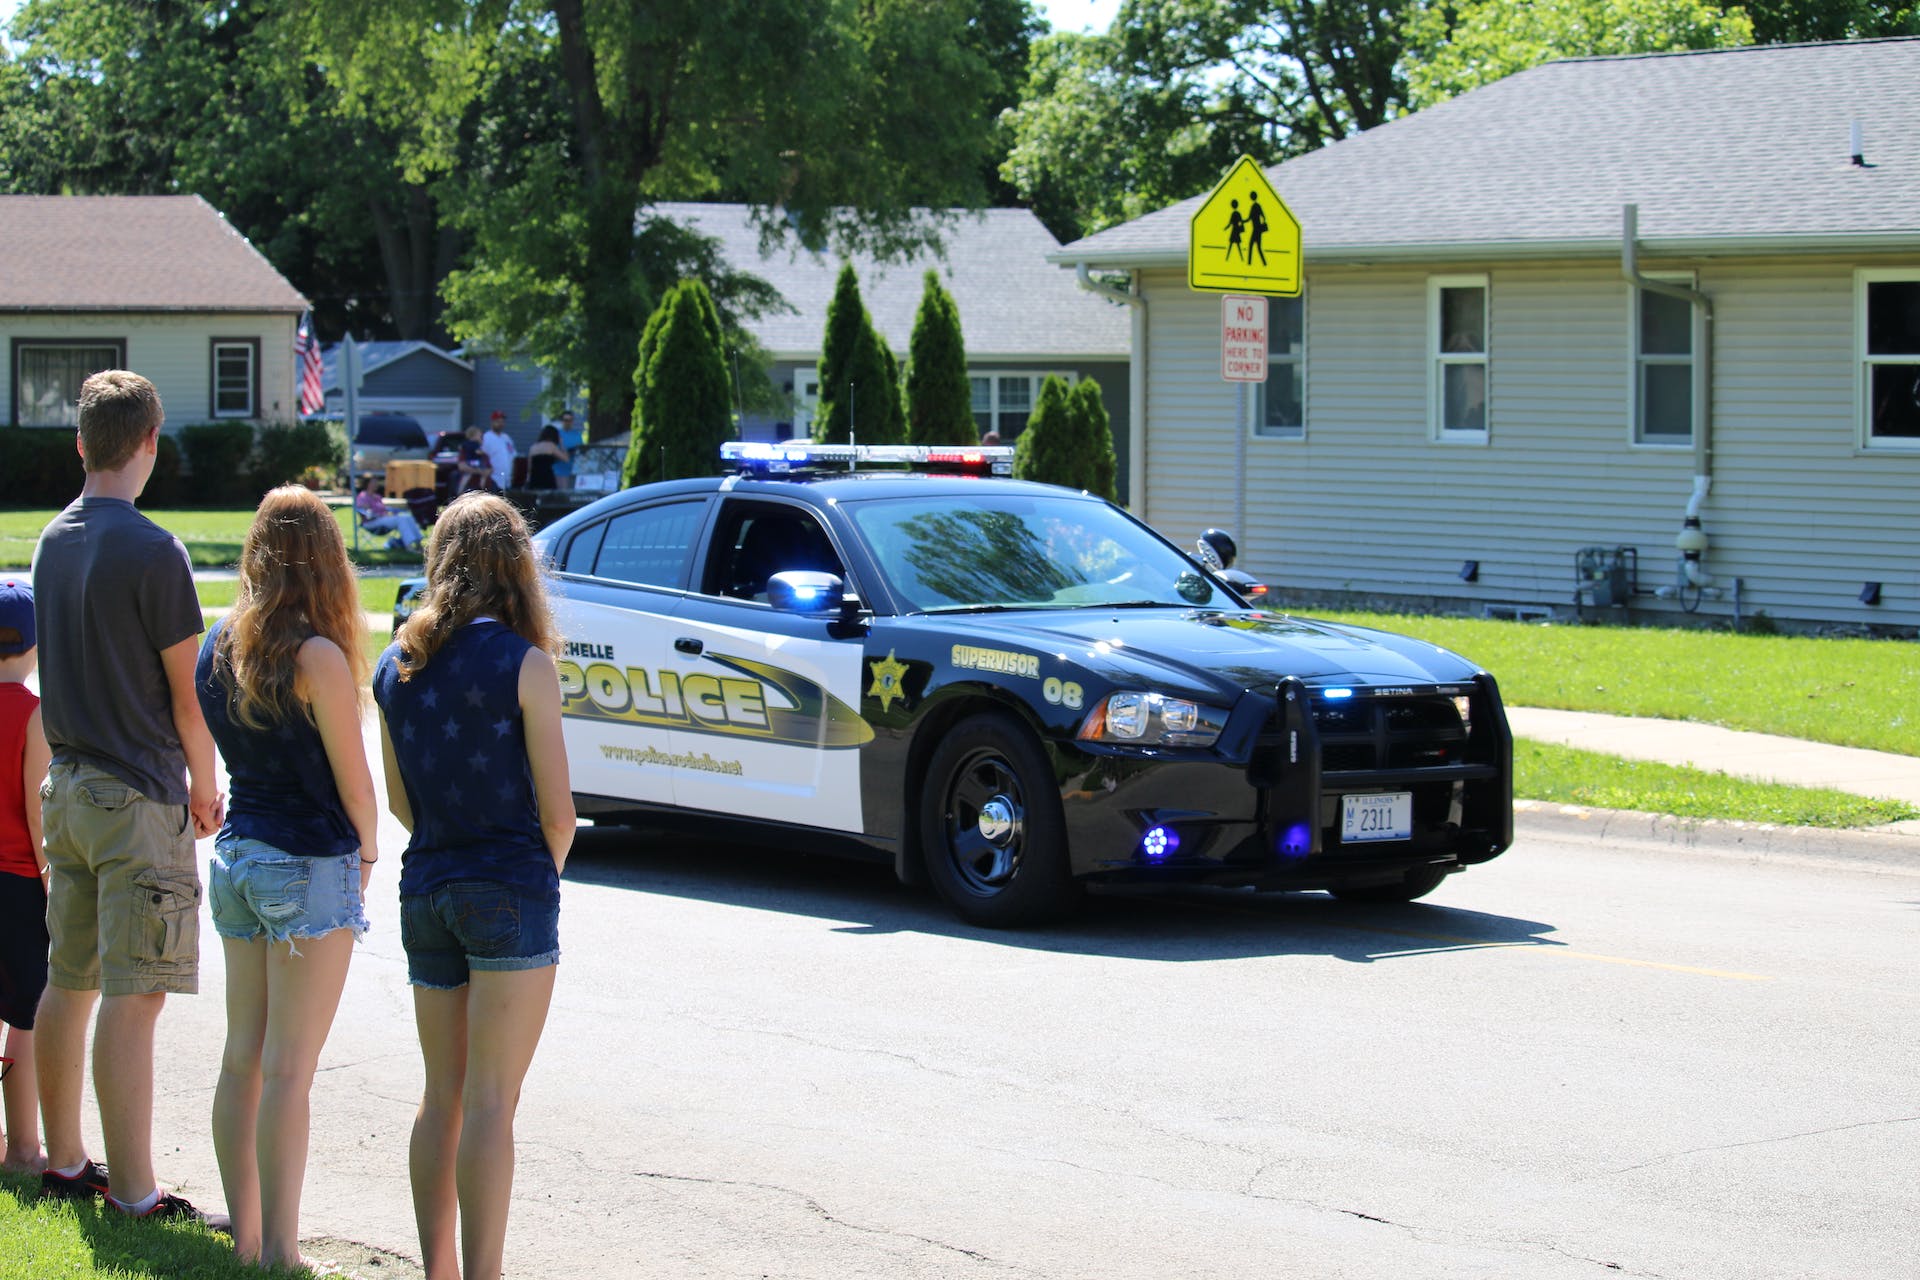 Des gens regardent une voiture de police qui passe dans un quartier | Source : Pexels